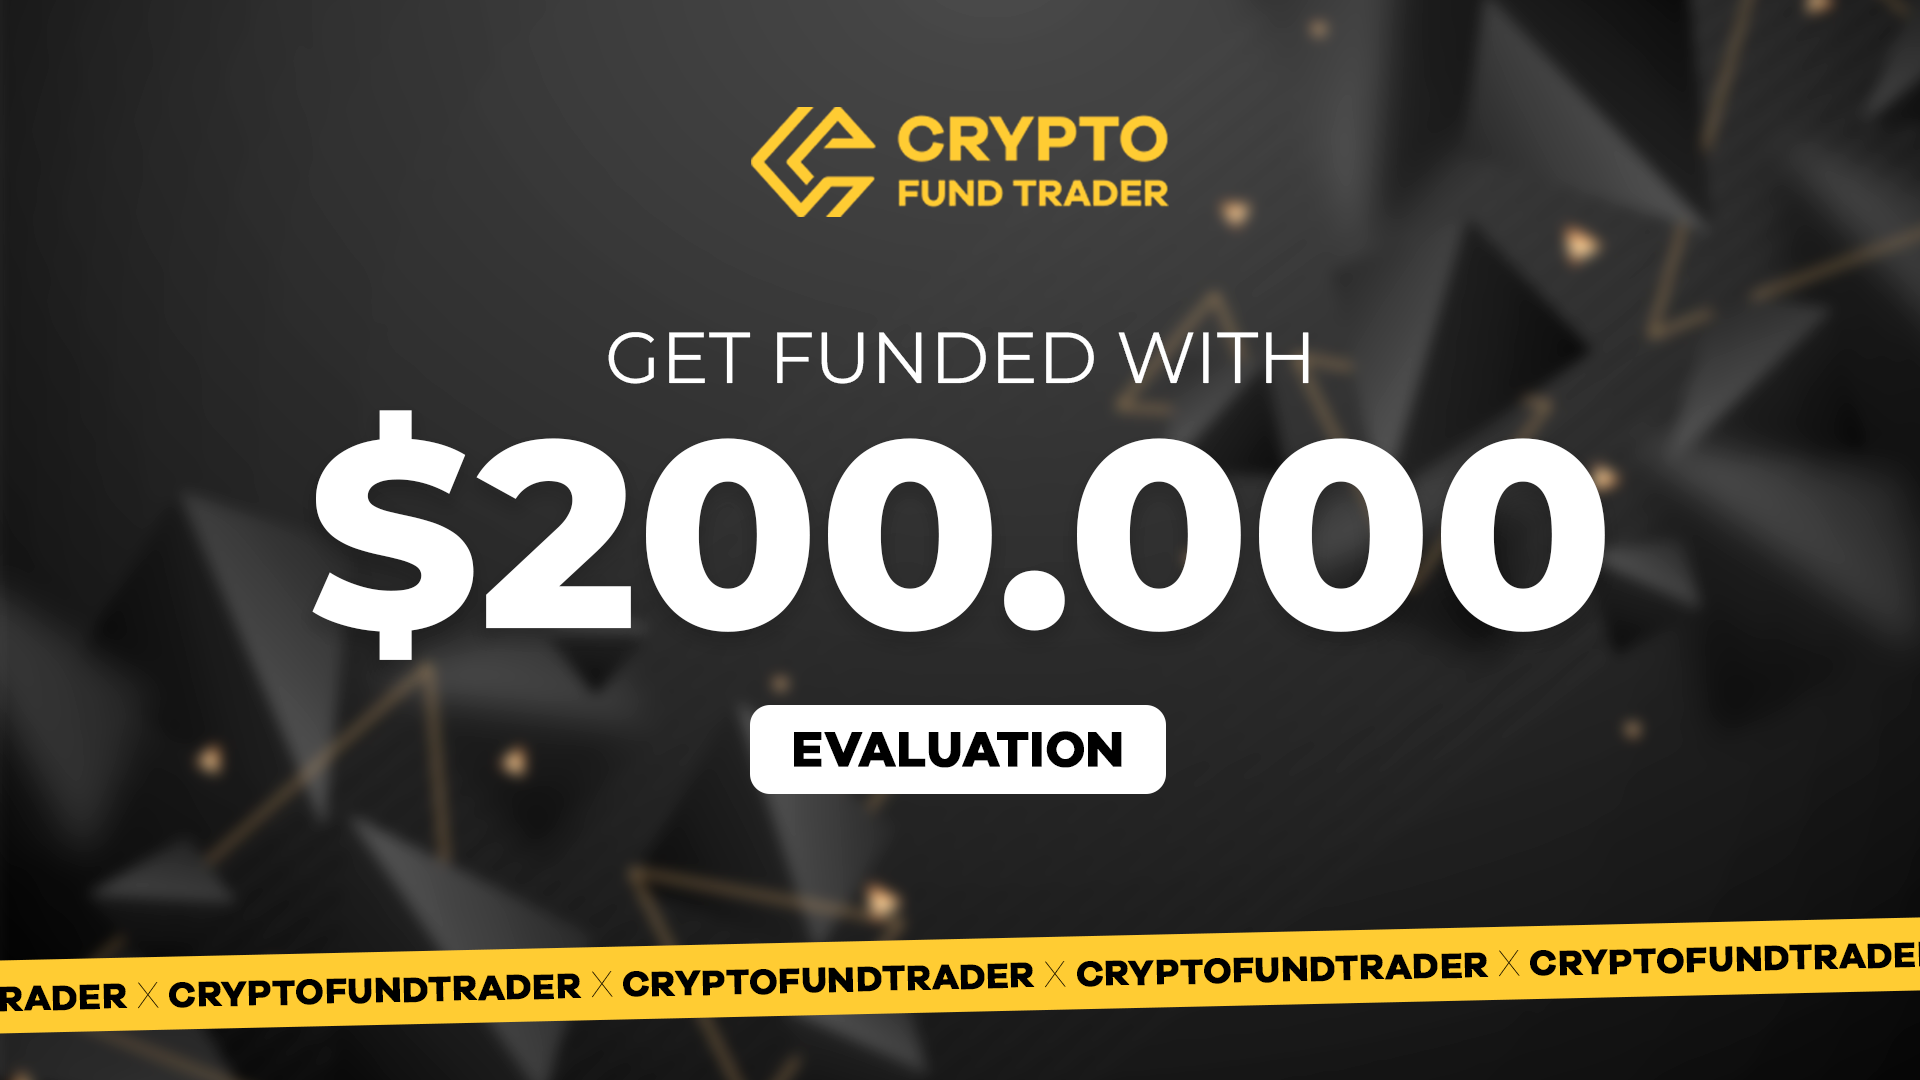 Crypto Fund Trader - $200.000 Evaluation Voucher, 1127.7 usd